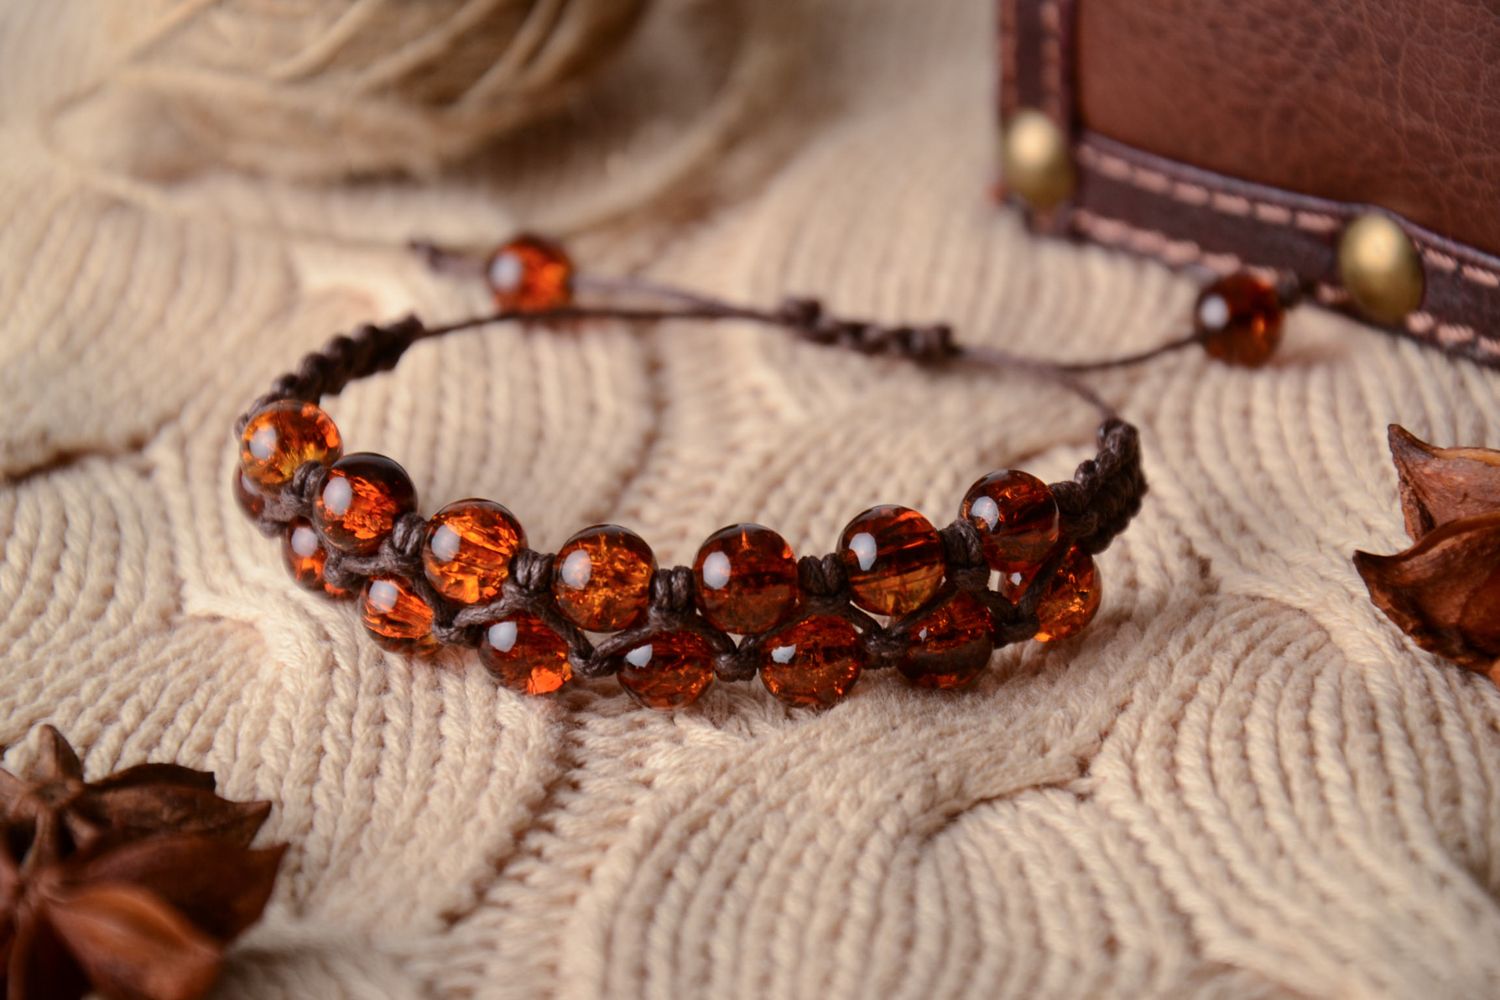 Wrist bracelet made of amber-like beads photo 1